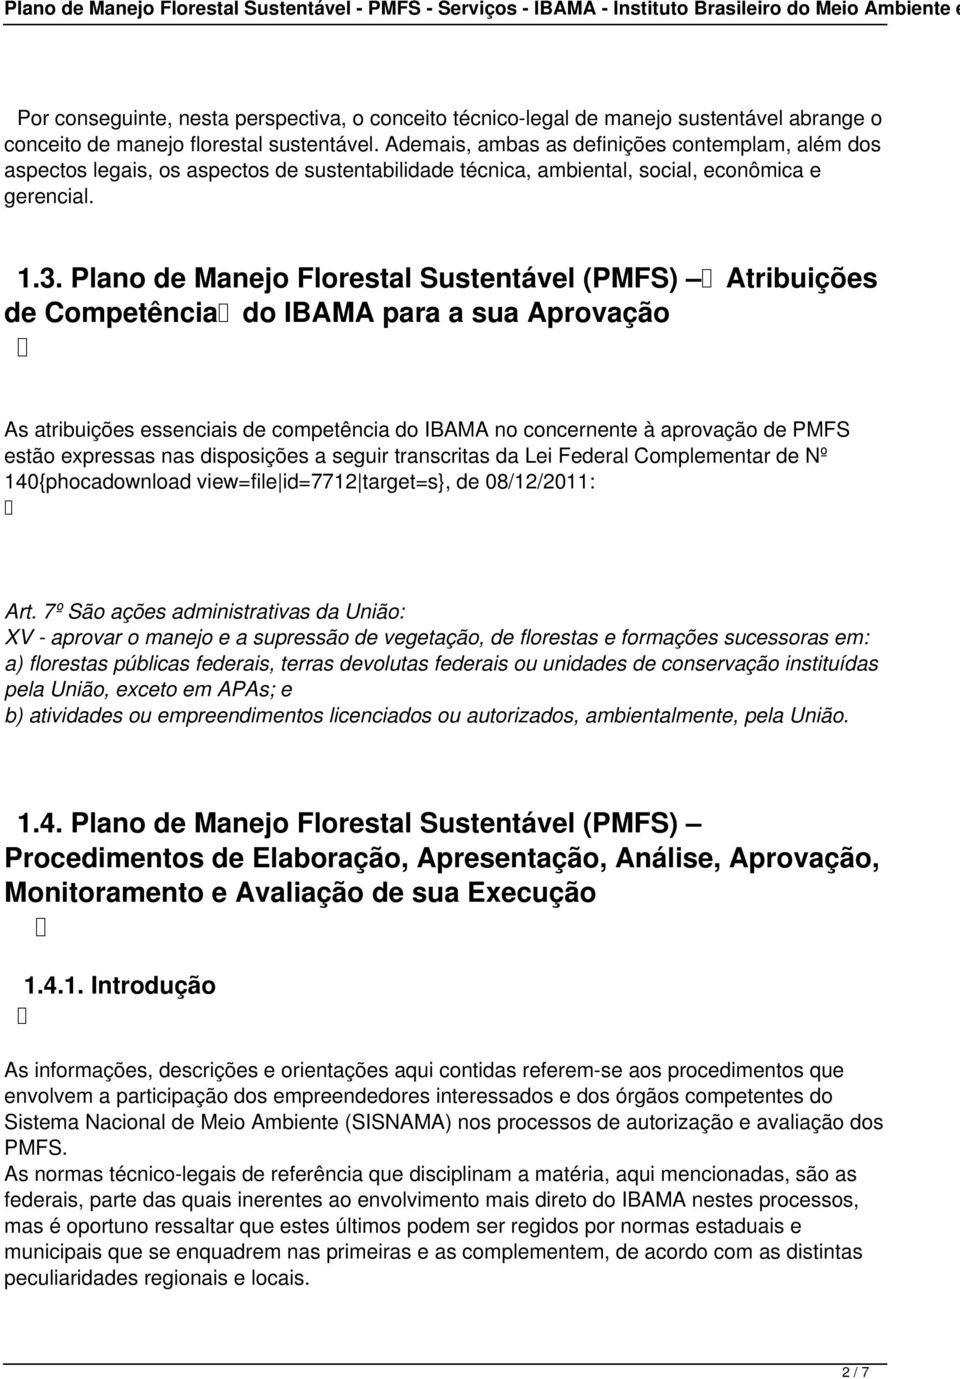 Plano de Manejo Florestal Sustentável (PMFS) Atribuições de Competência do IBAMA para a sua Aprovação As atribuições essenciais de competência do IBAMA no concernente à aprovação de PMFS estão